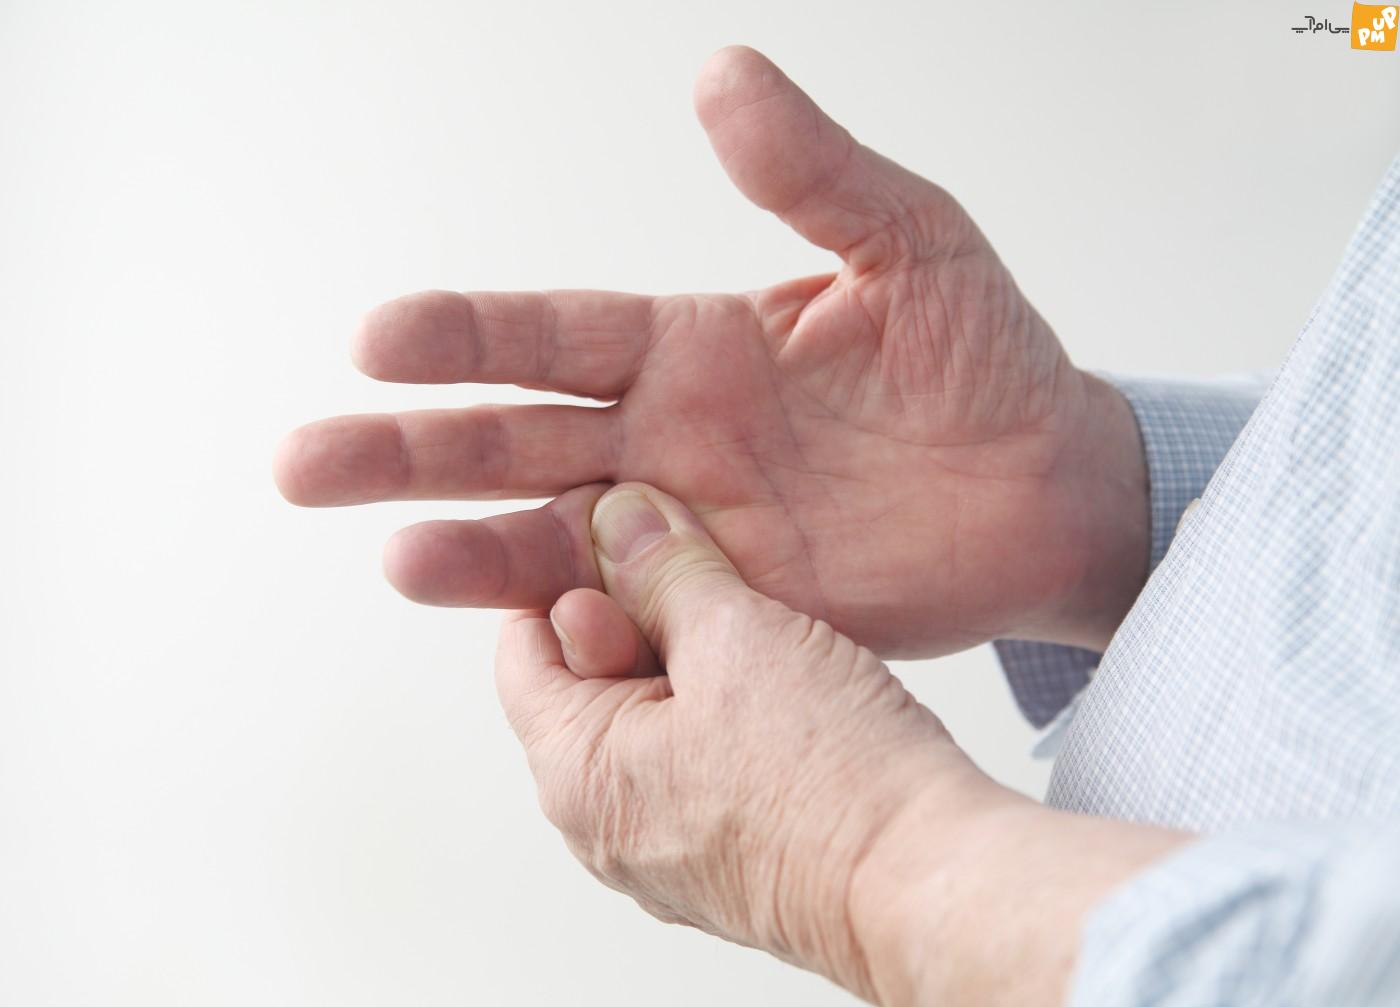 سوزن سوزن شدن دست ها ممکن است از علائم این بیماری ها باشد! /جزئیات